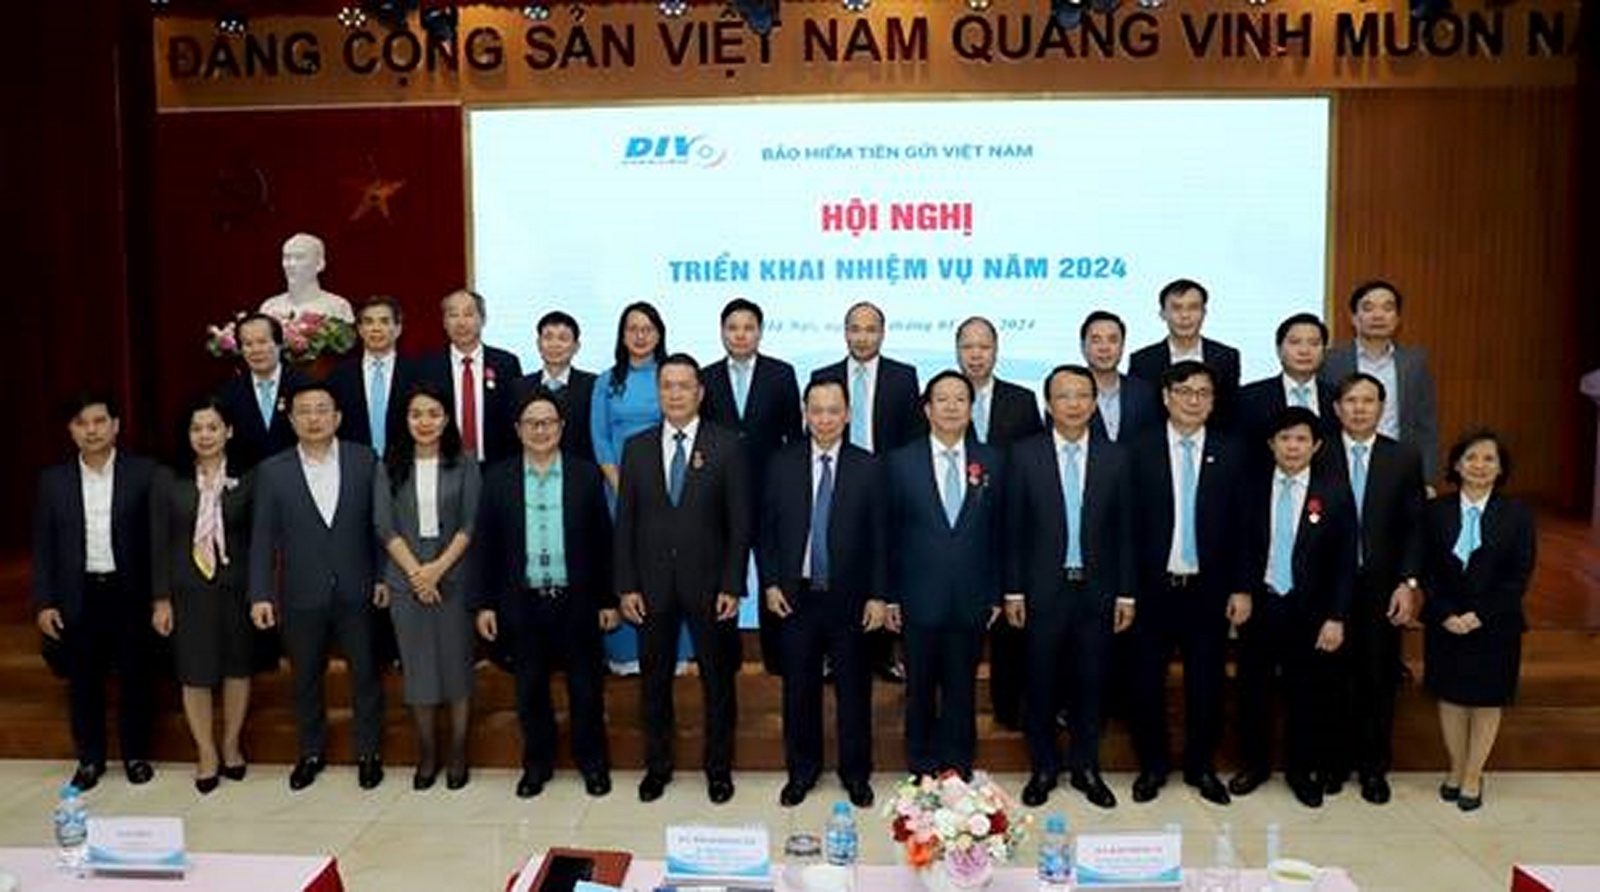 Bảo hiểm tiền gửi Việt Nam: Vững vàng và chủ động hoàn thành nhiệm vụ chính trị được giao